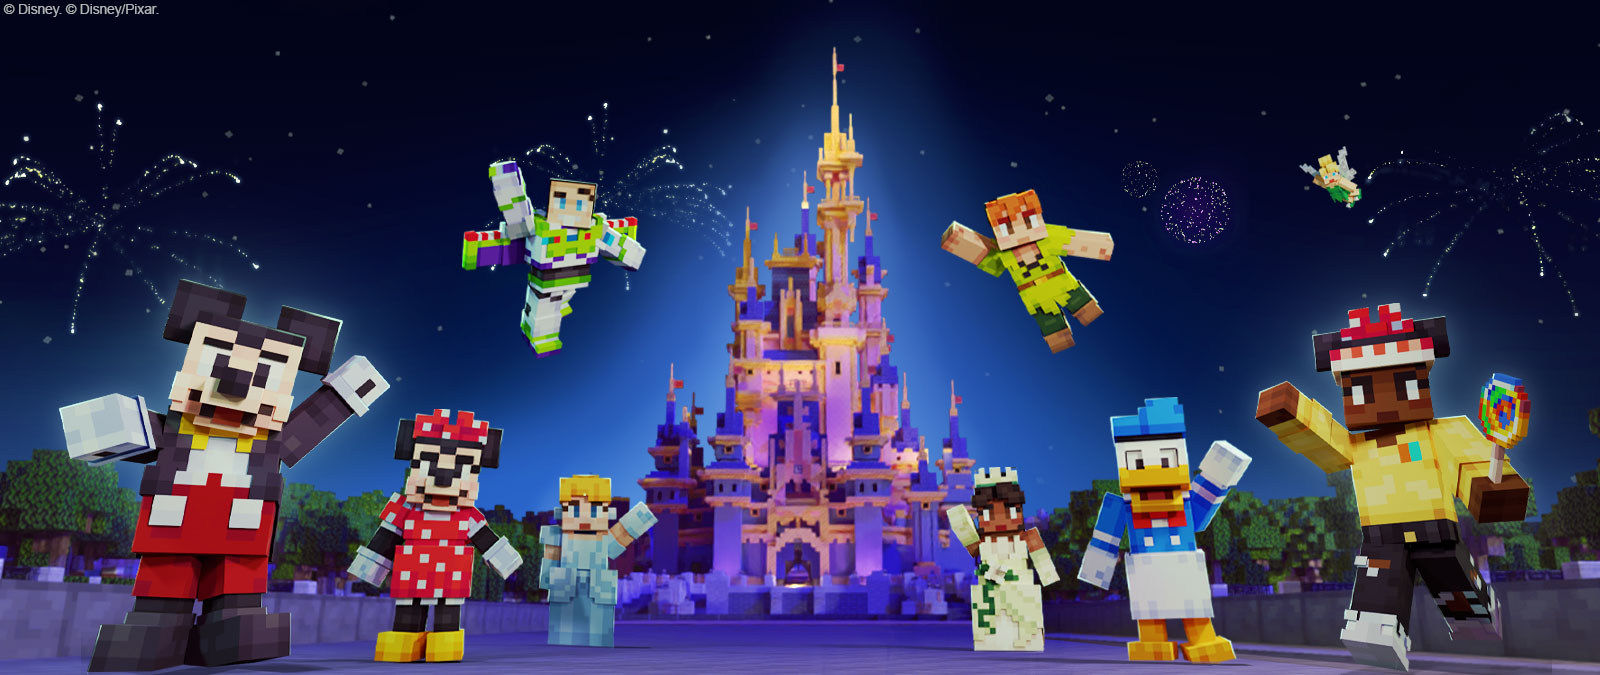 Mickey Mouse, Minnie Mouse, Buzz Lightyear, Assepoester, Peter Pan, Tiana, Donald Duck, Tinkelbel en een ander personage in Minecraft-stijl voor het Disney-kasteel